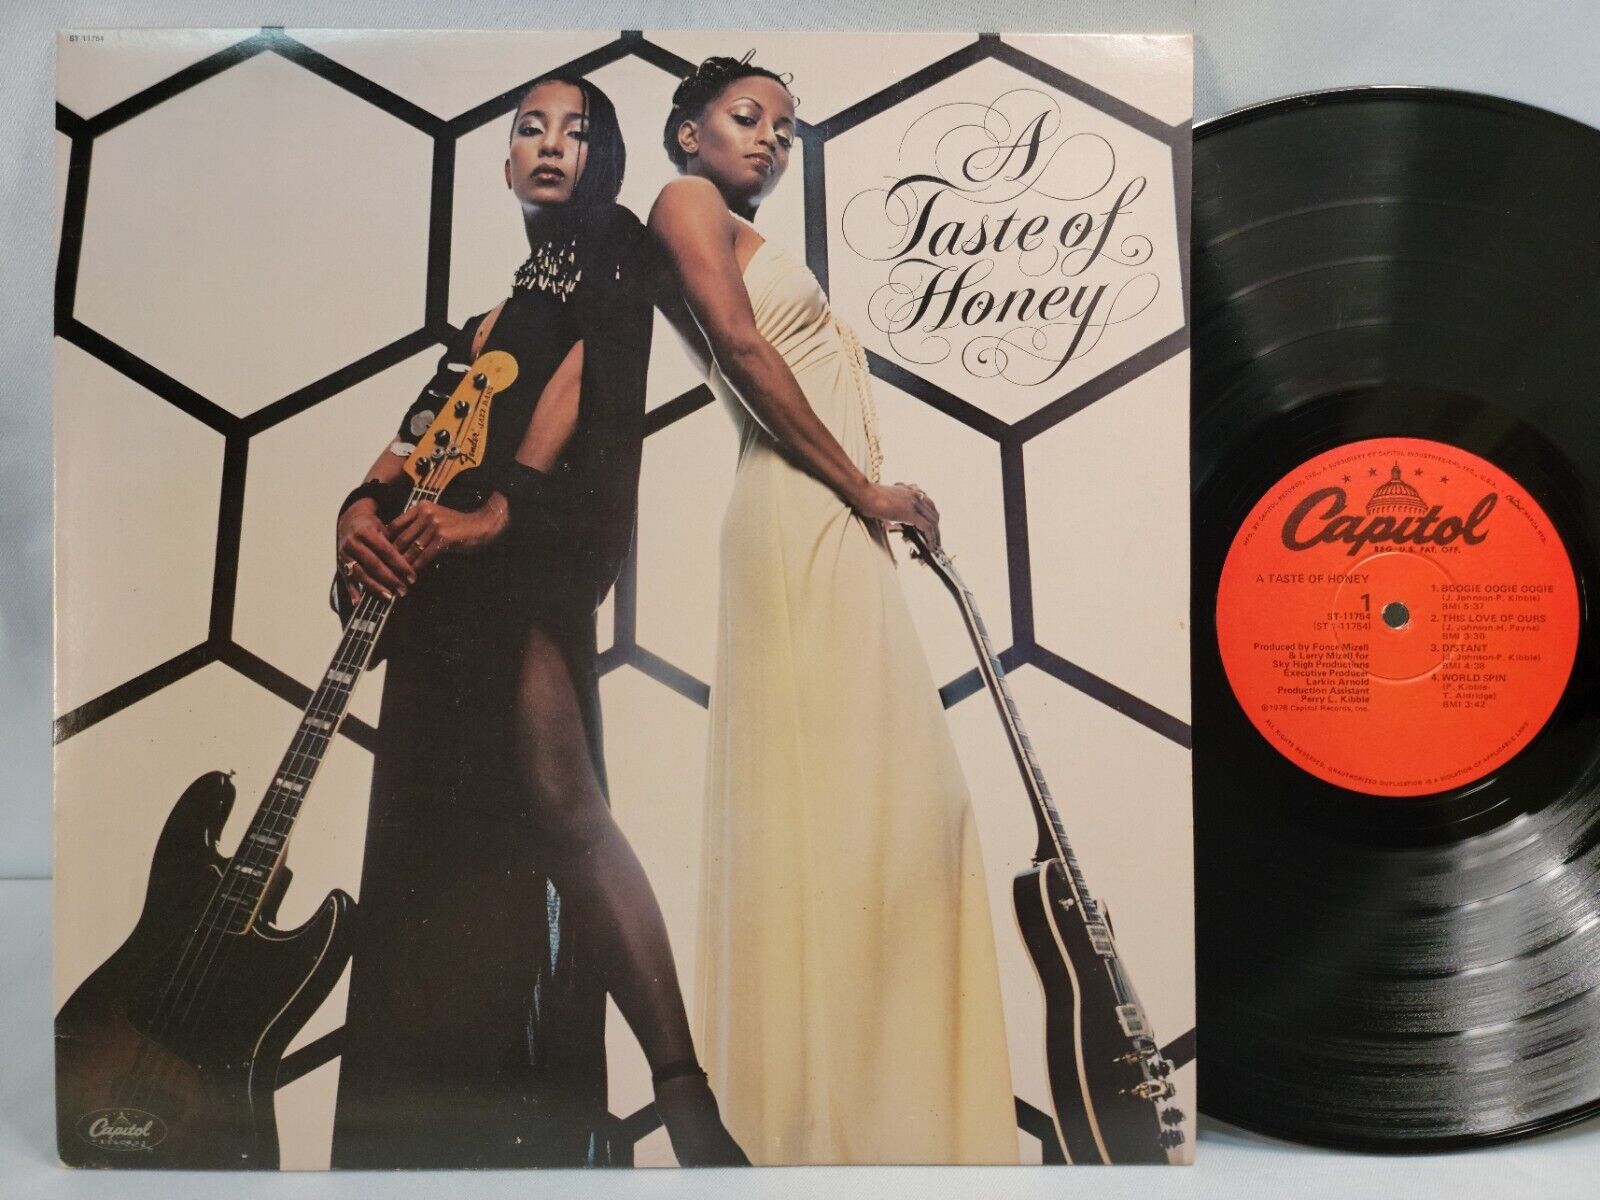 A Taste Of Honey - Self Titled - OG 1978 LP - CAPITOL - DISCO SOUL FUNK - EX